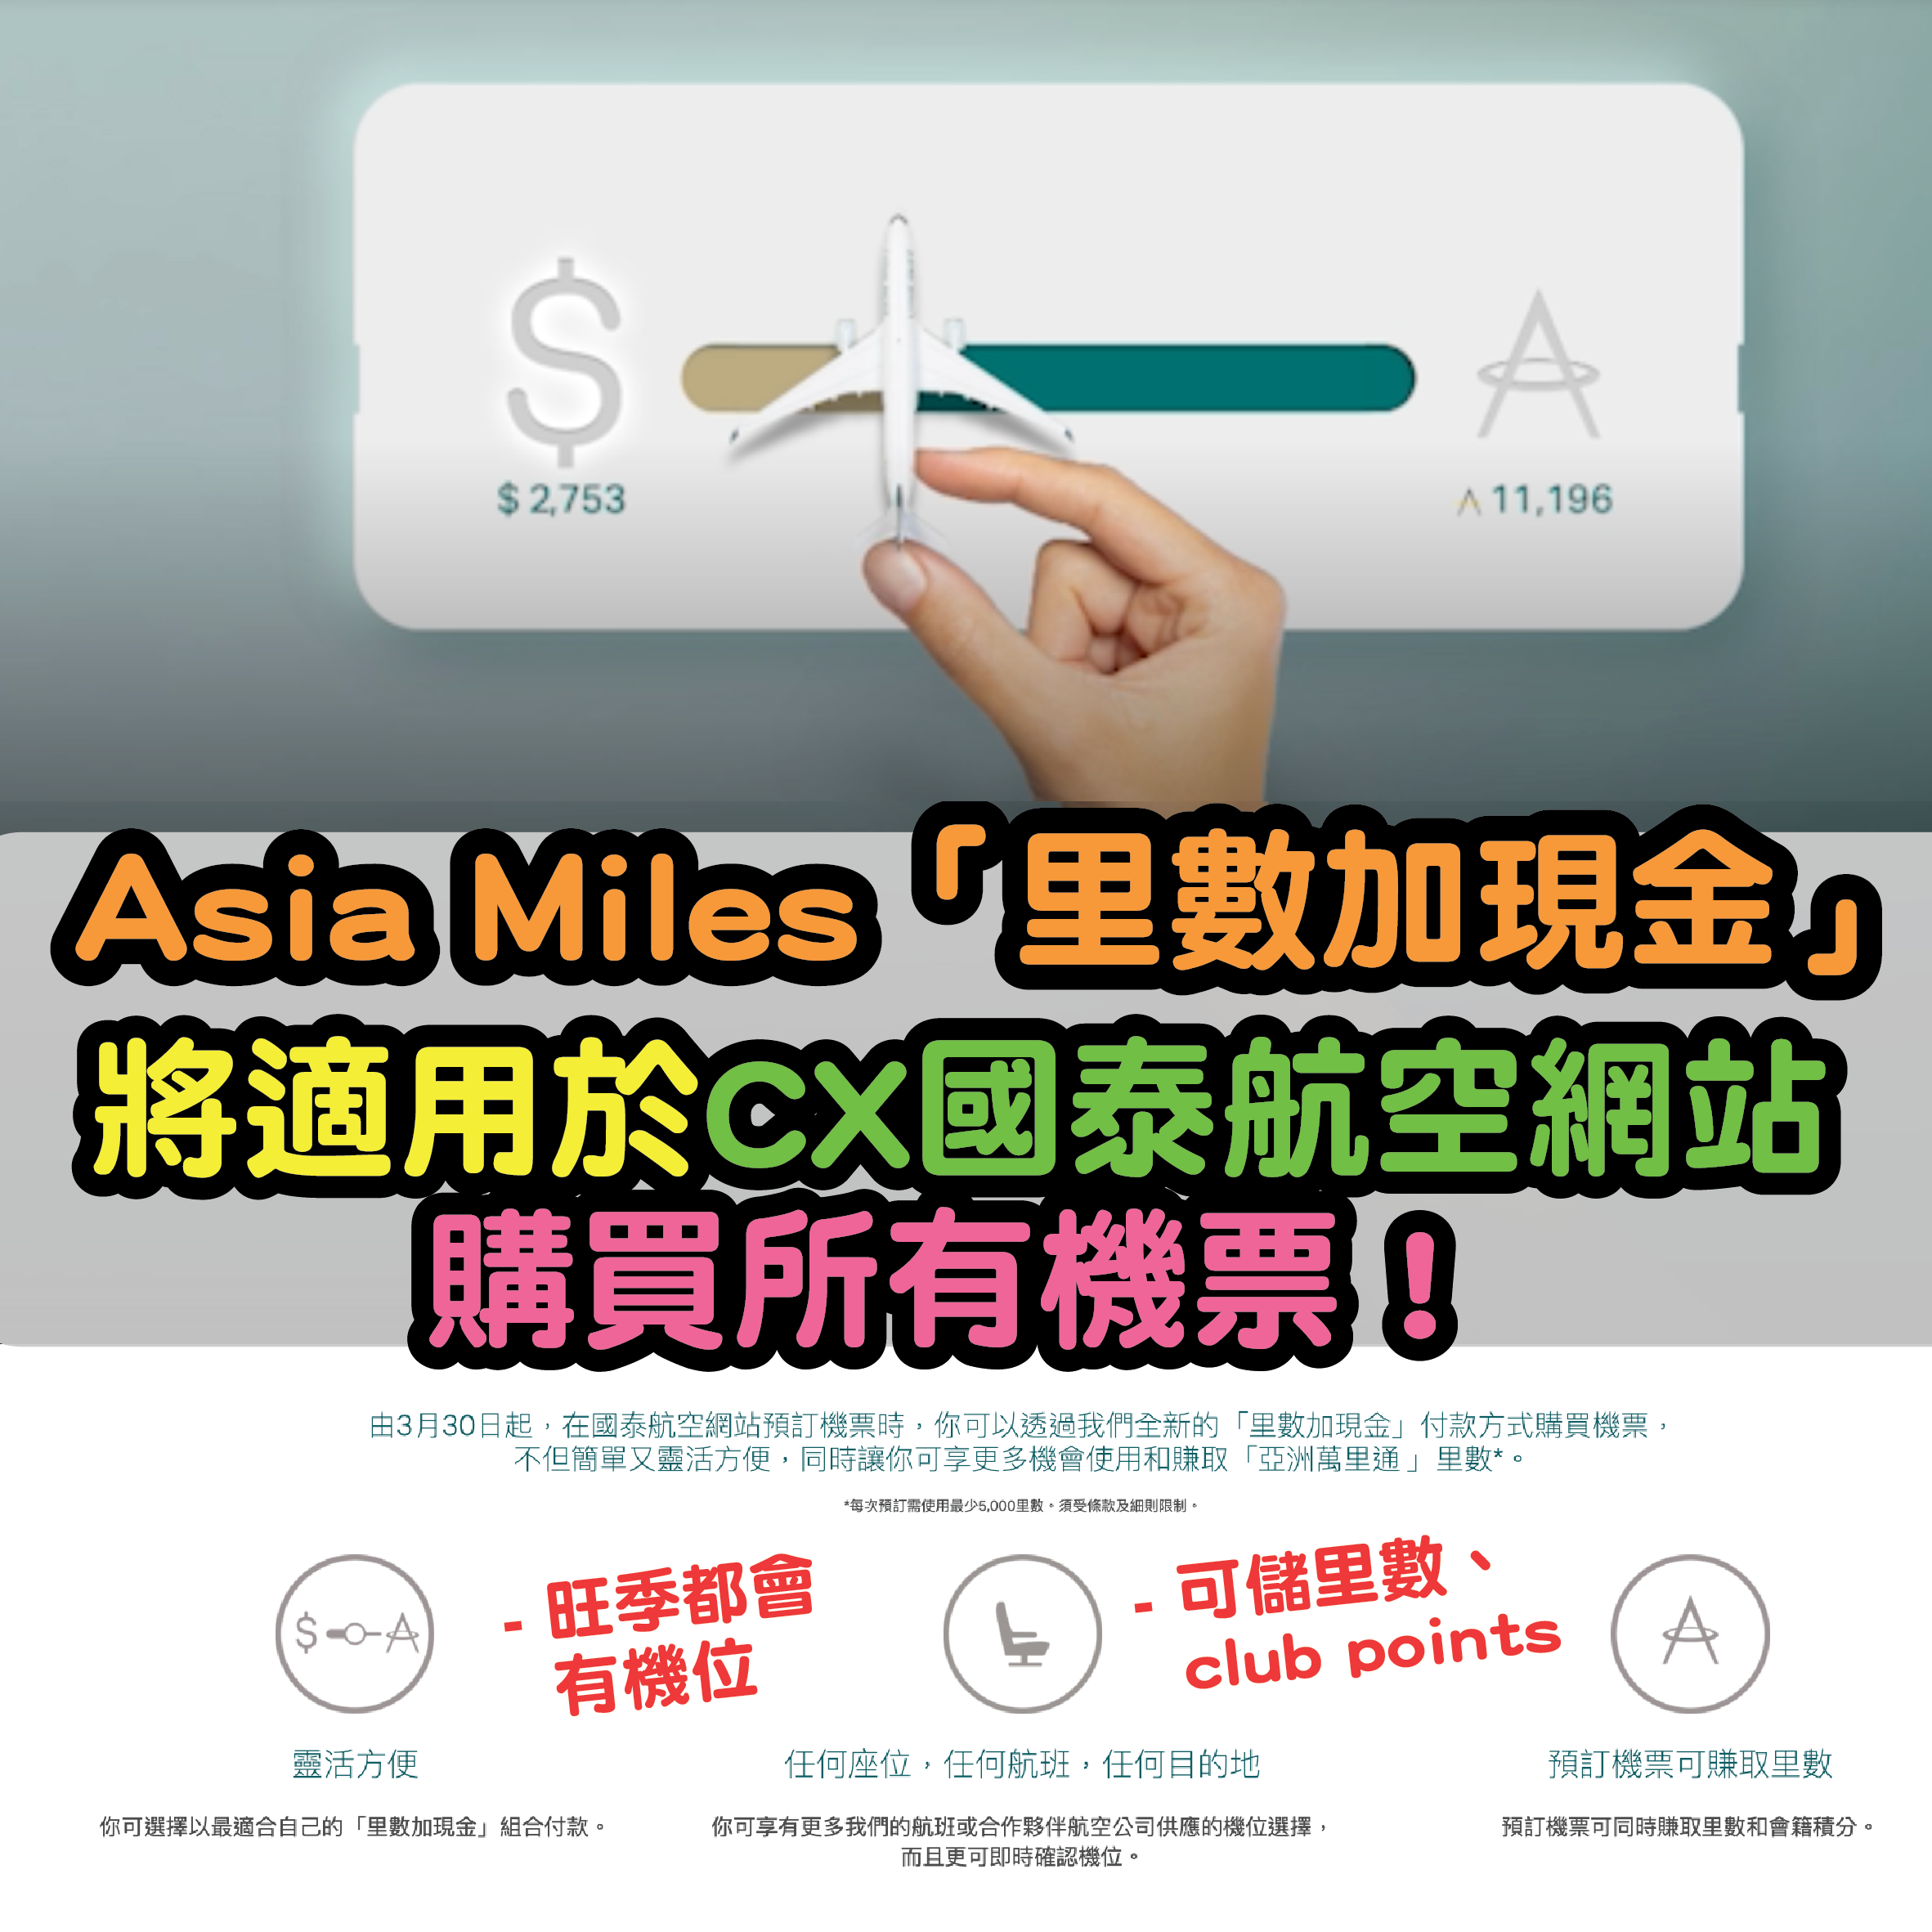 Asia Miles miles + points-03